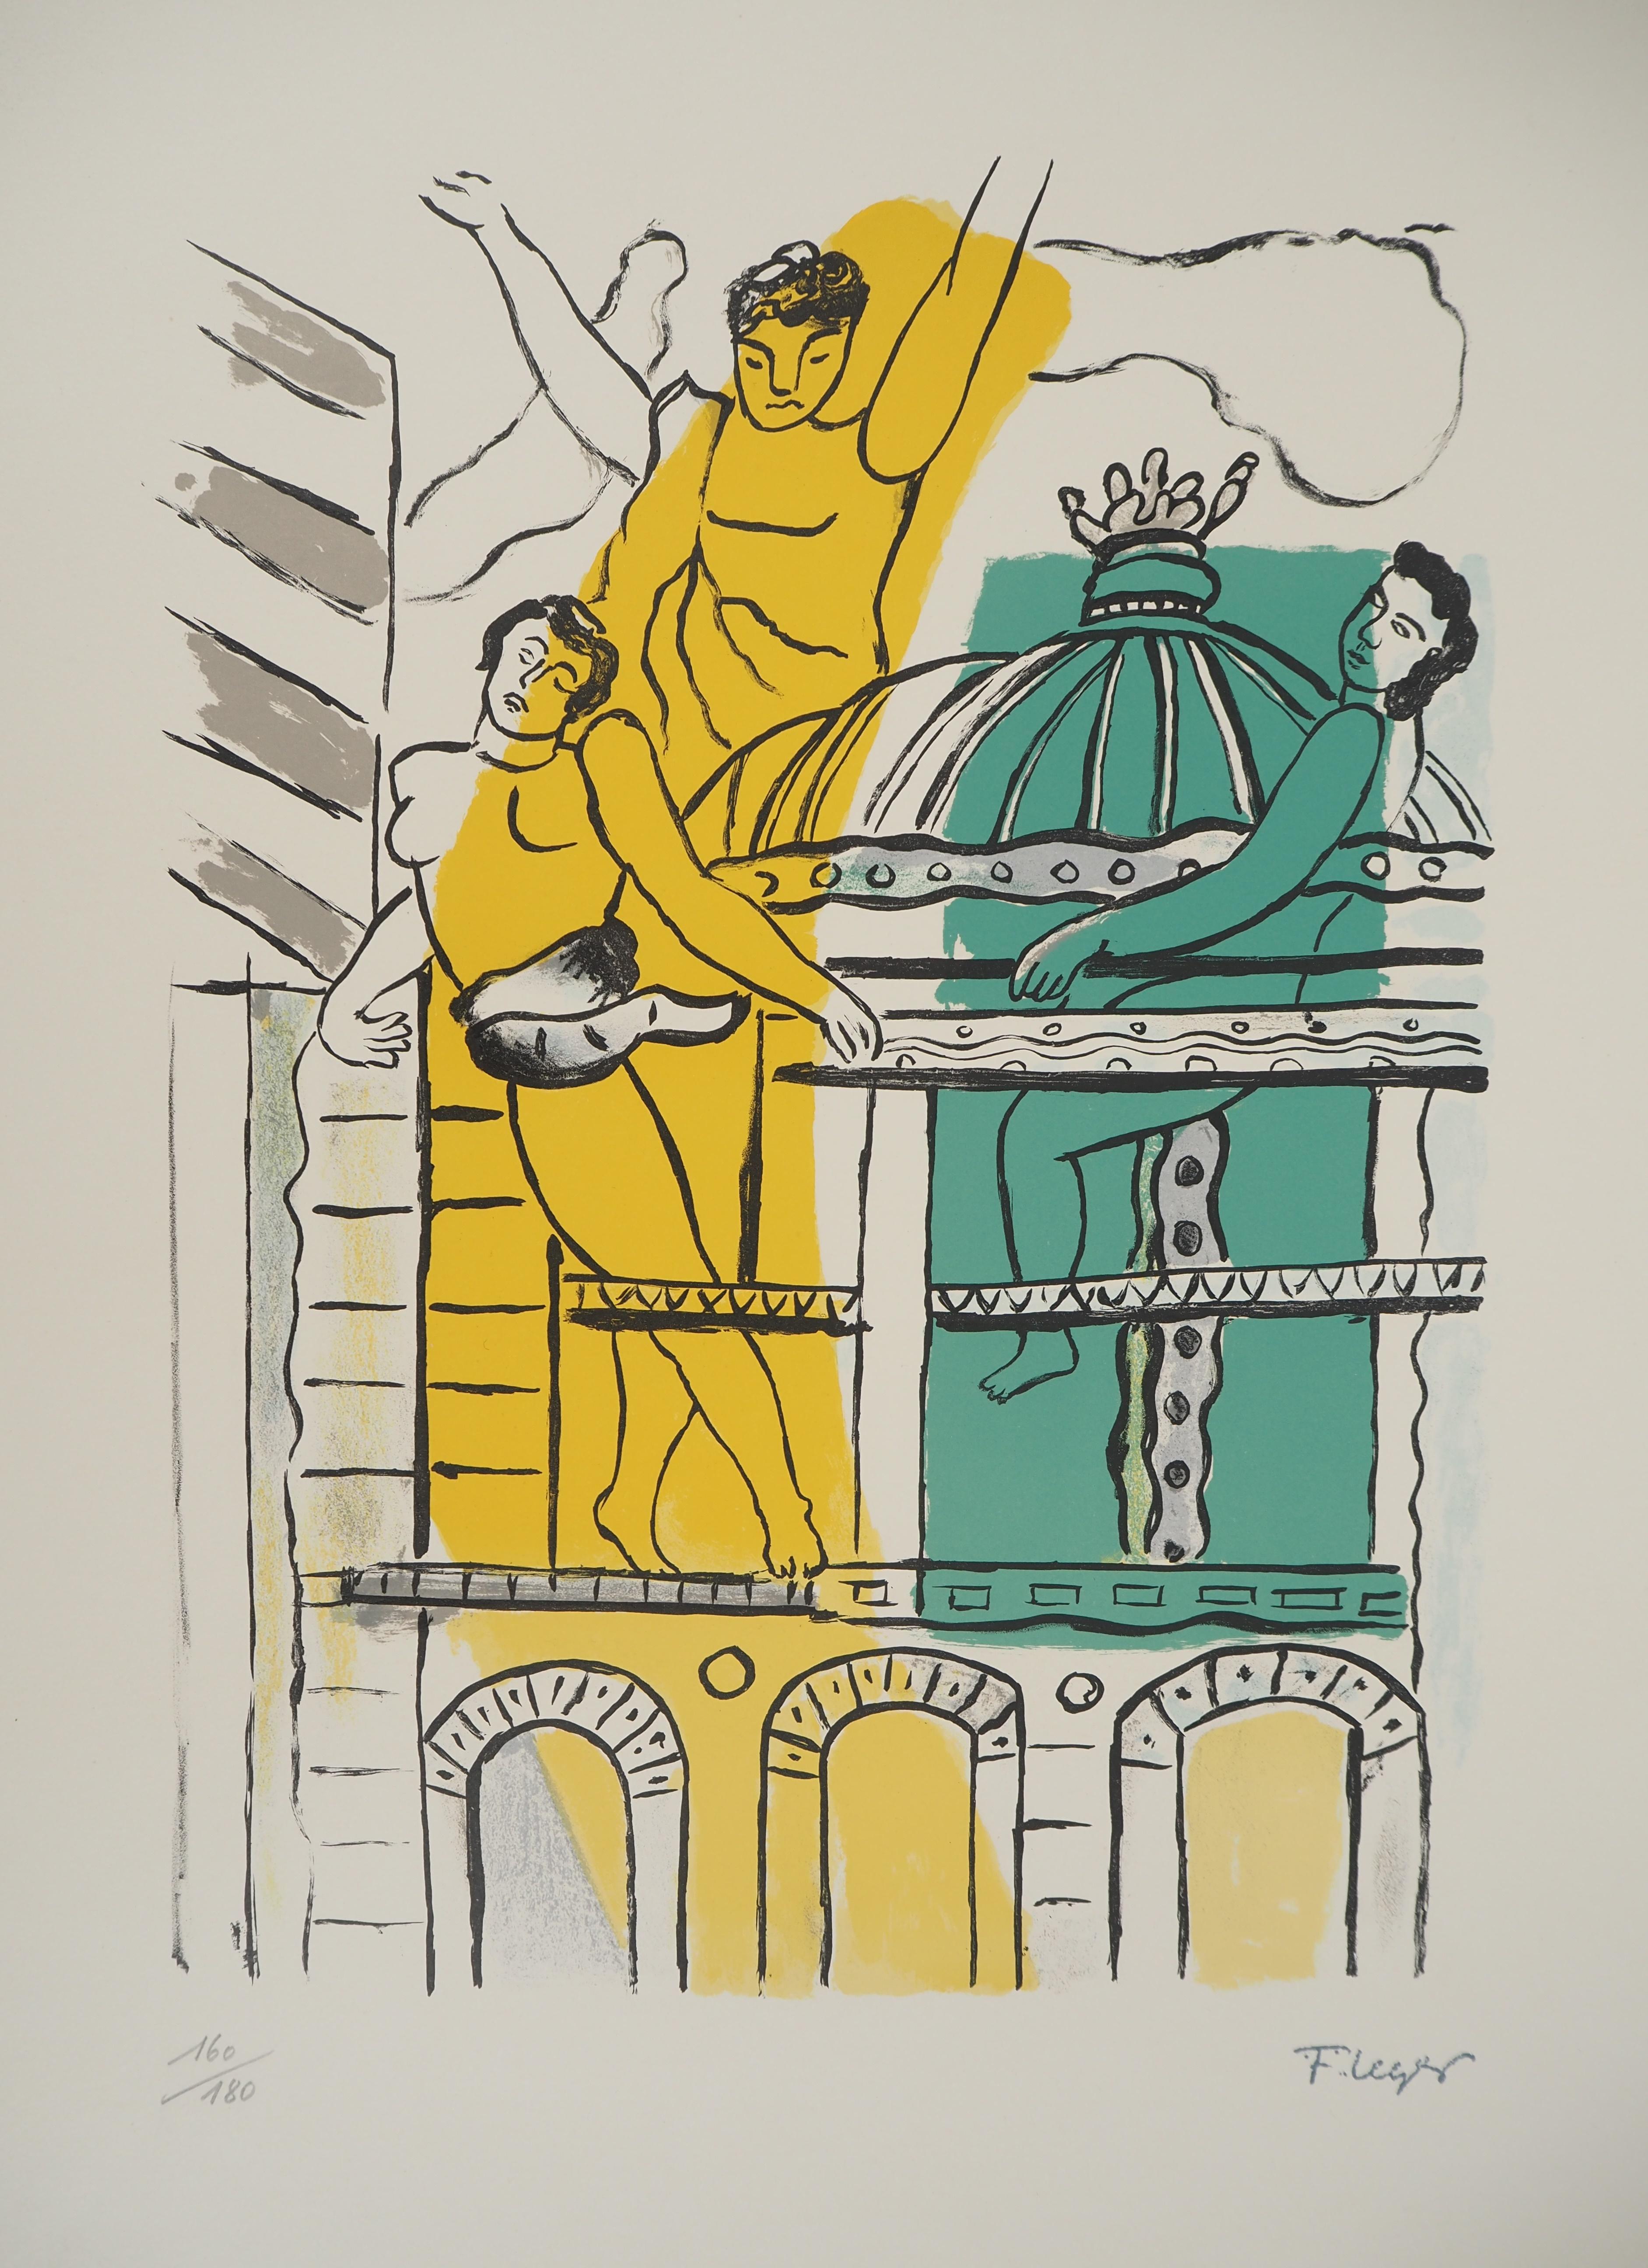 The city, The Opéra Garnier - Original lithograph, HANDSIGNED, 1959 - Modern Print by Fernand Léger